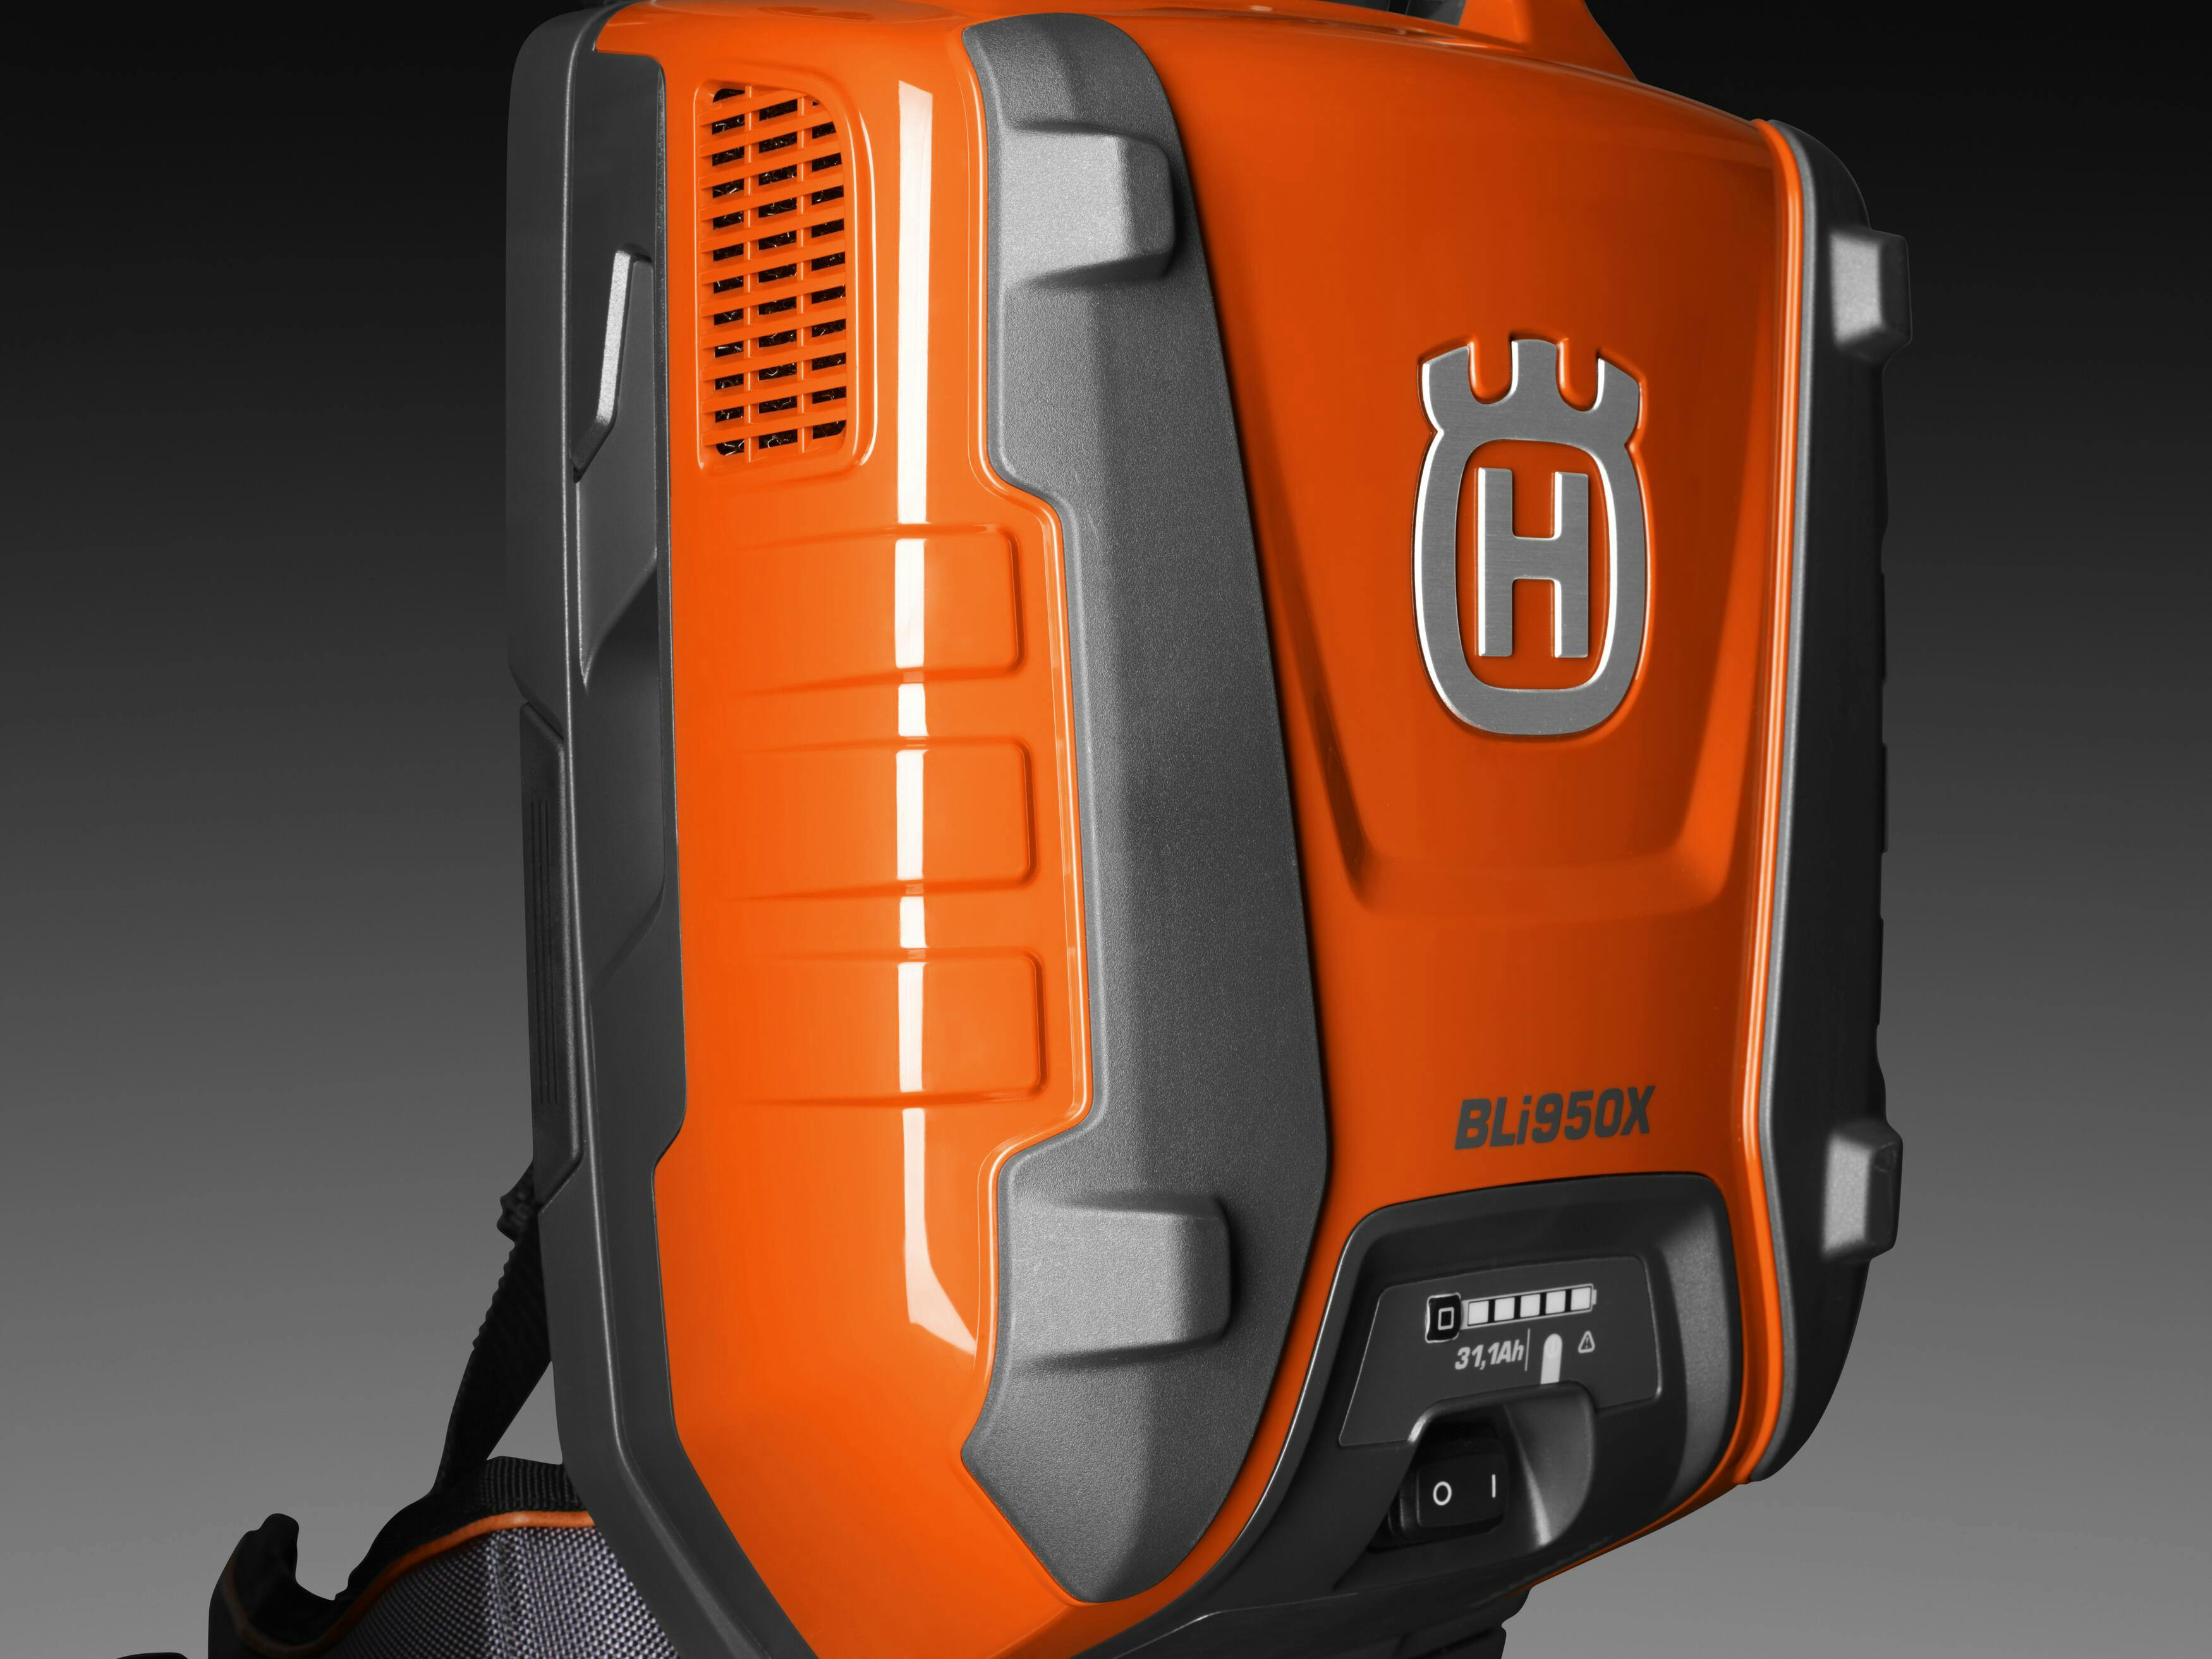 BLi950X Backpack Battery image 7